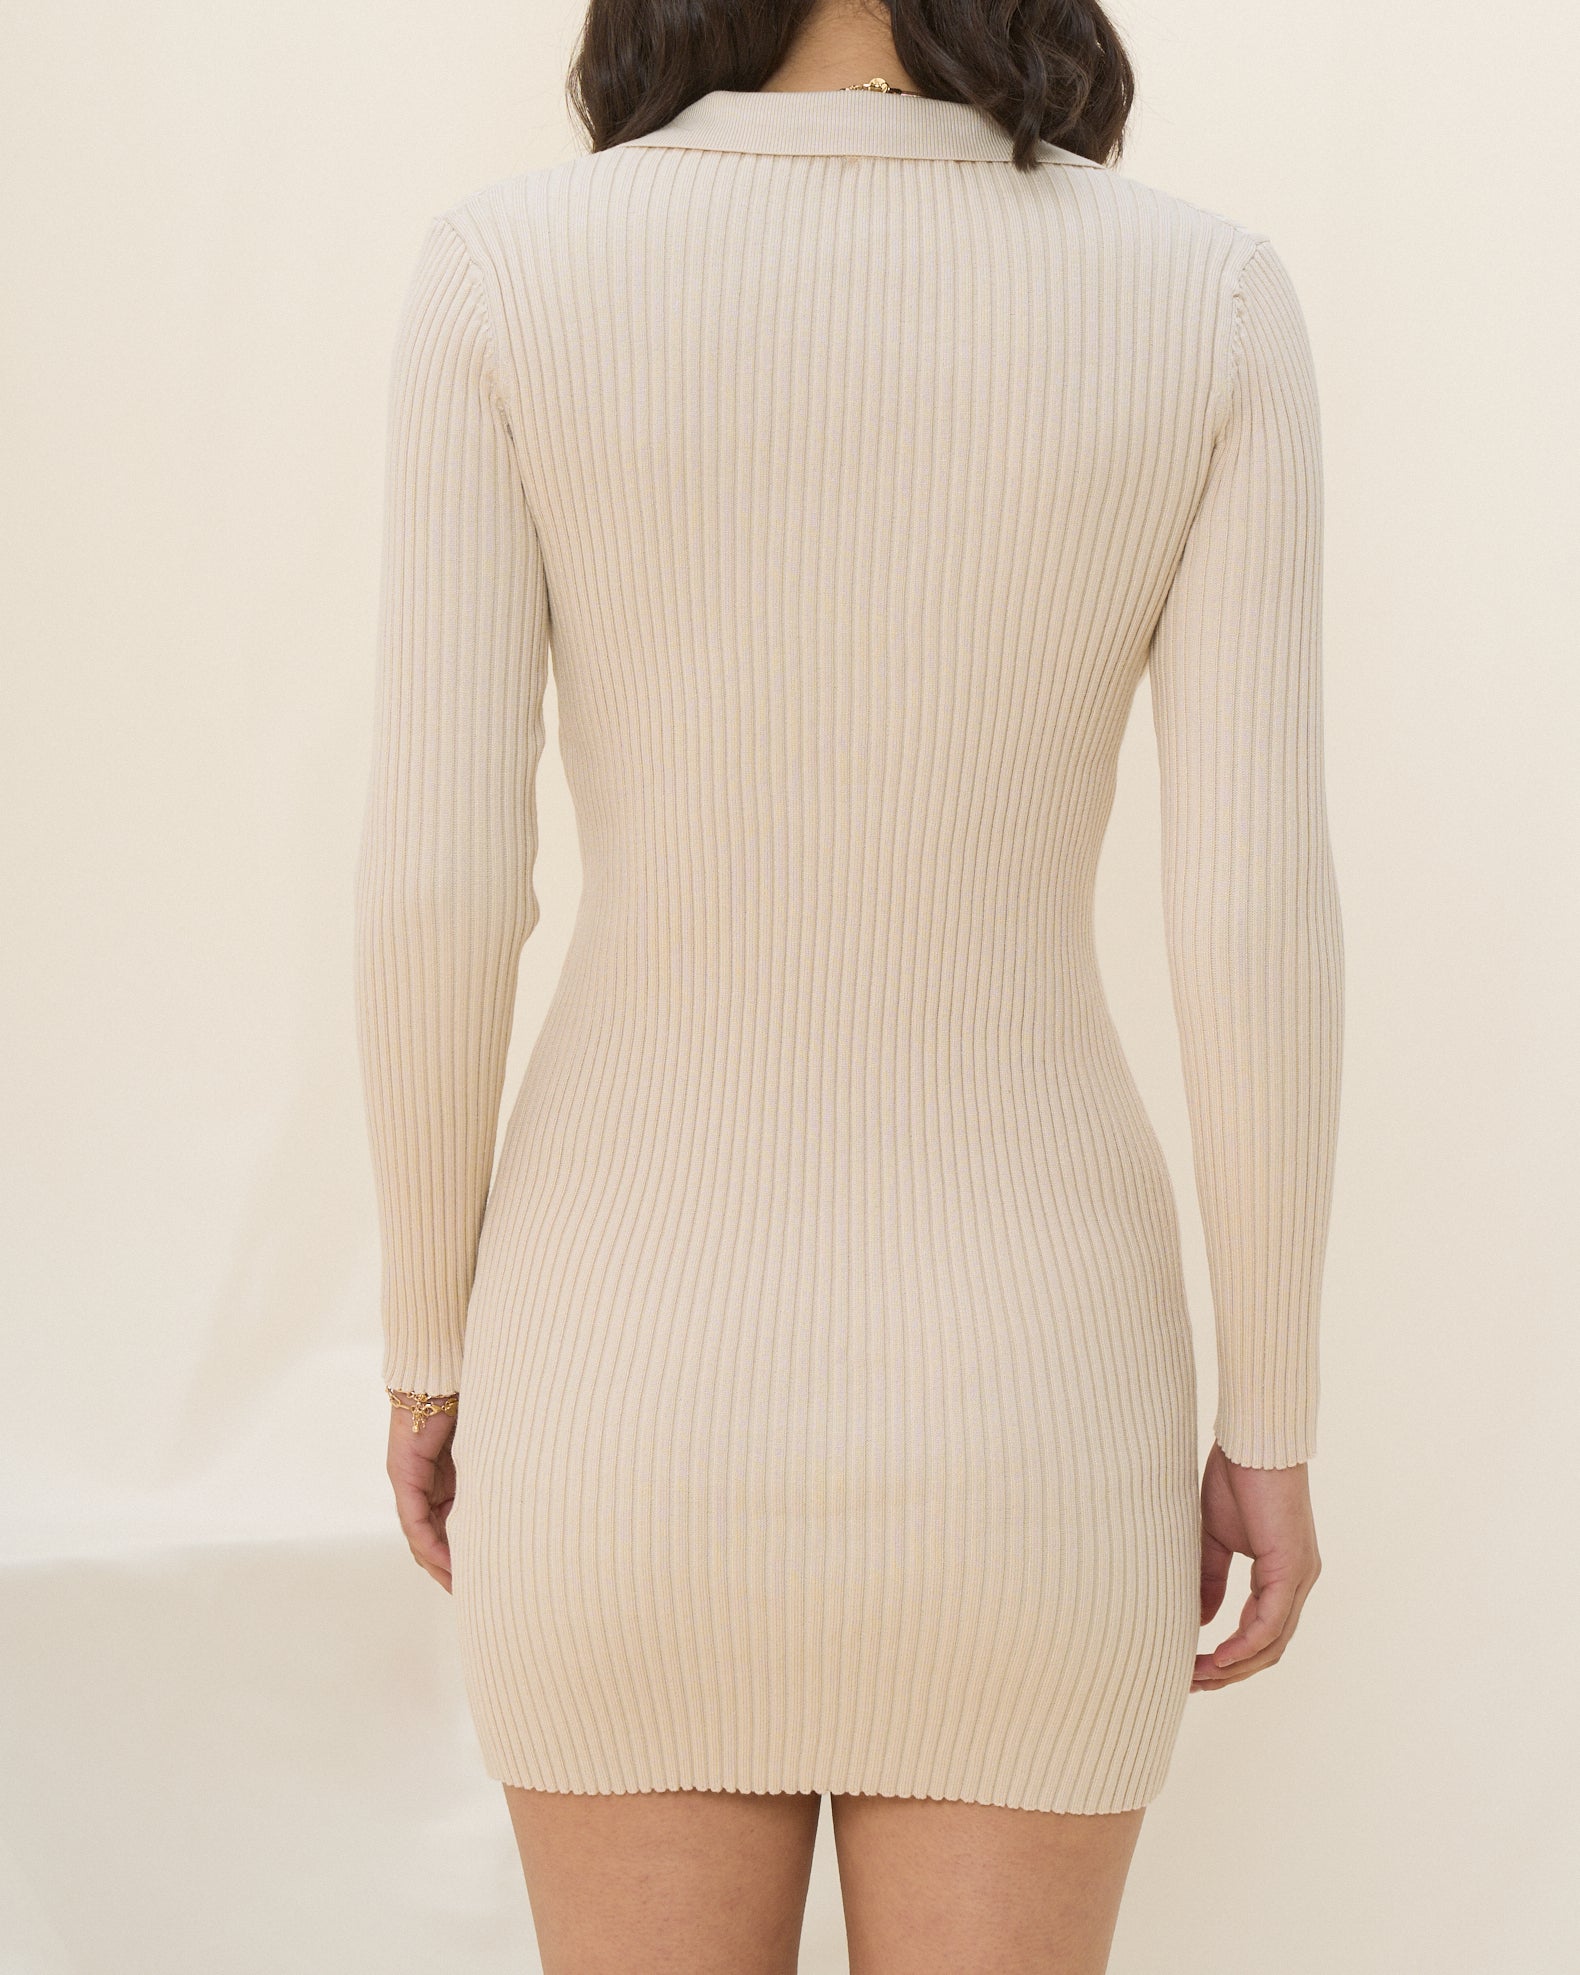 Cece Beige Long Sleeve Collared Knit Mini Dress